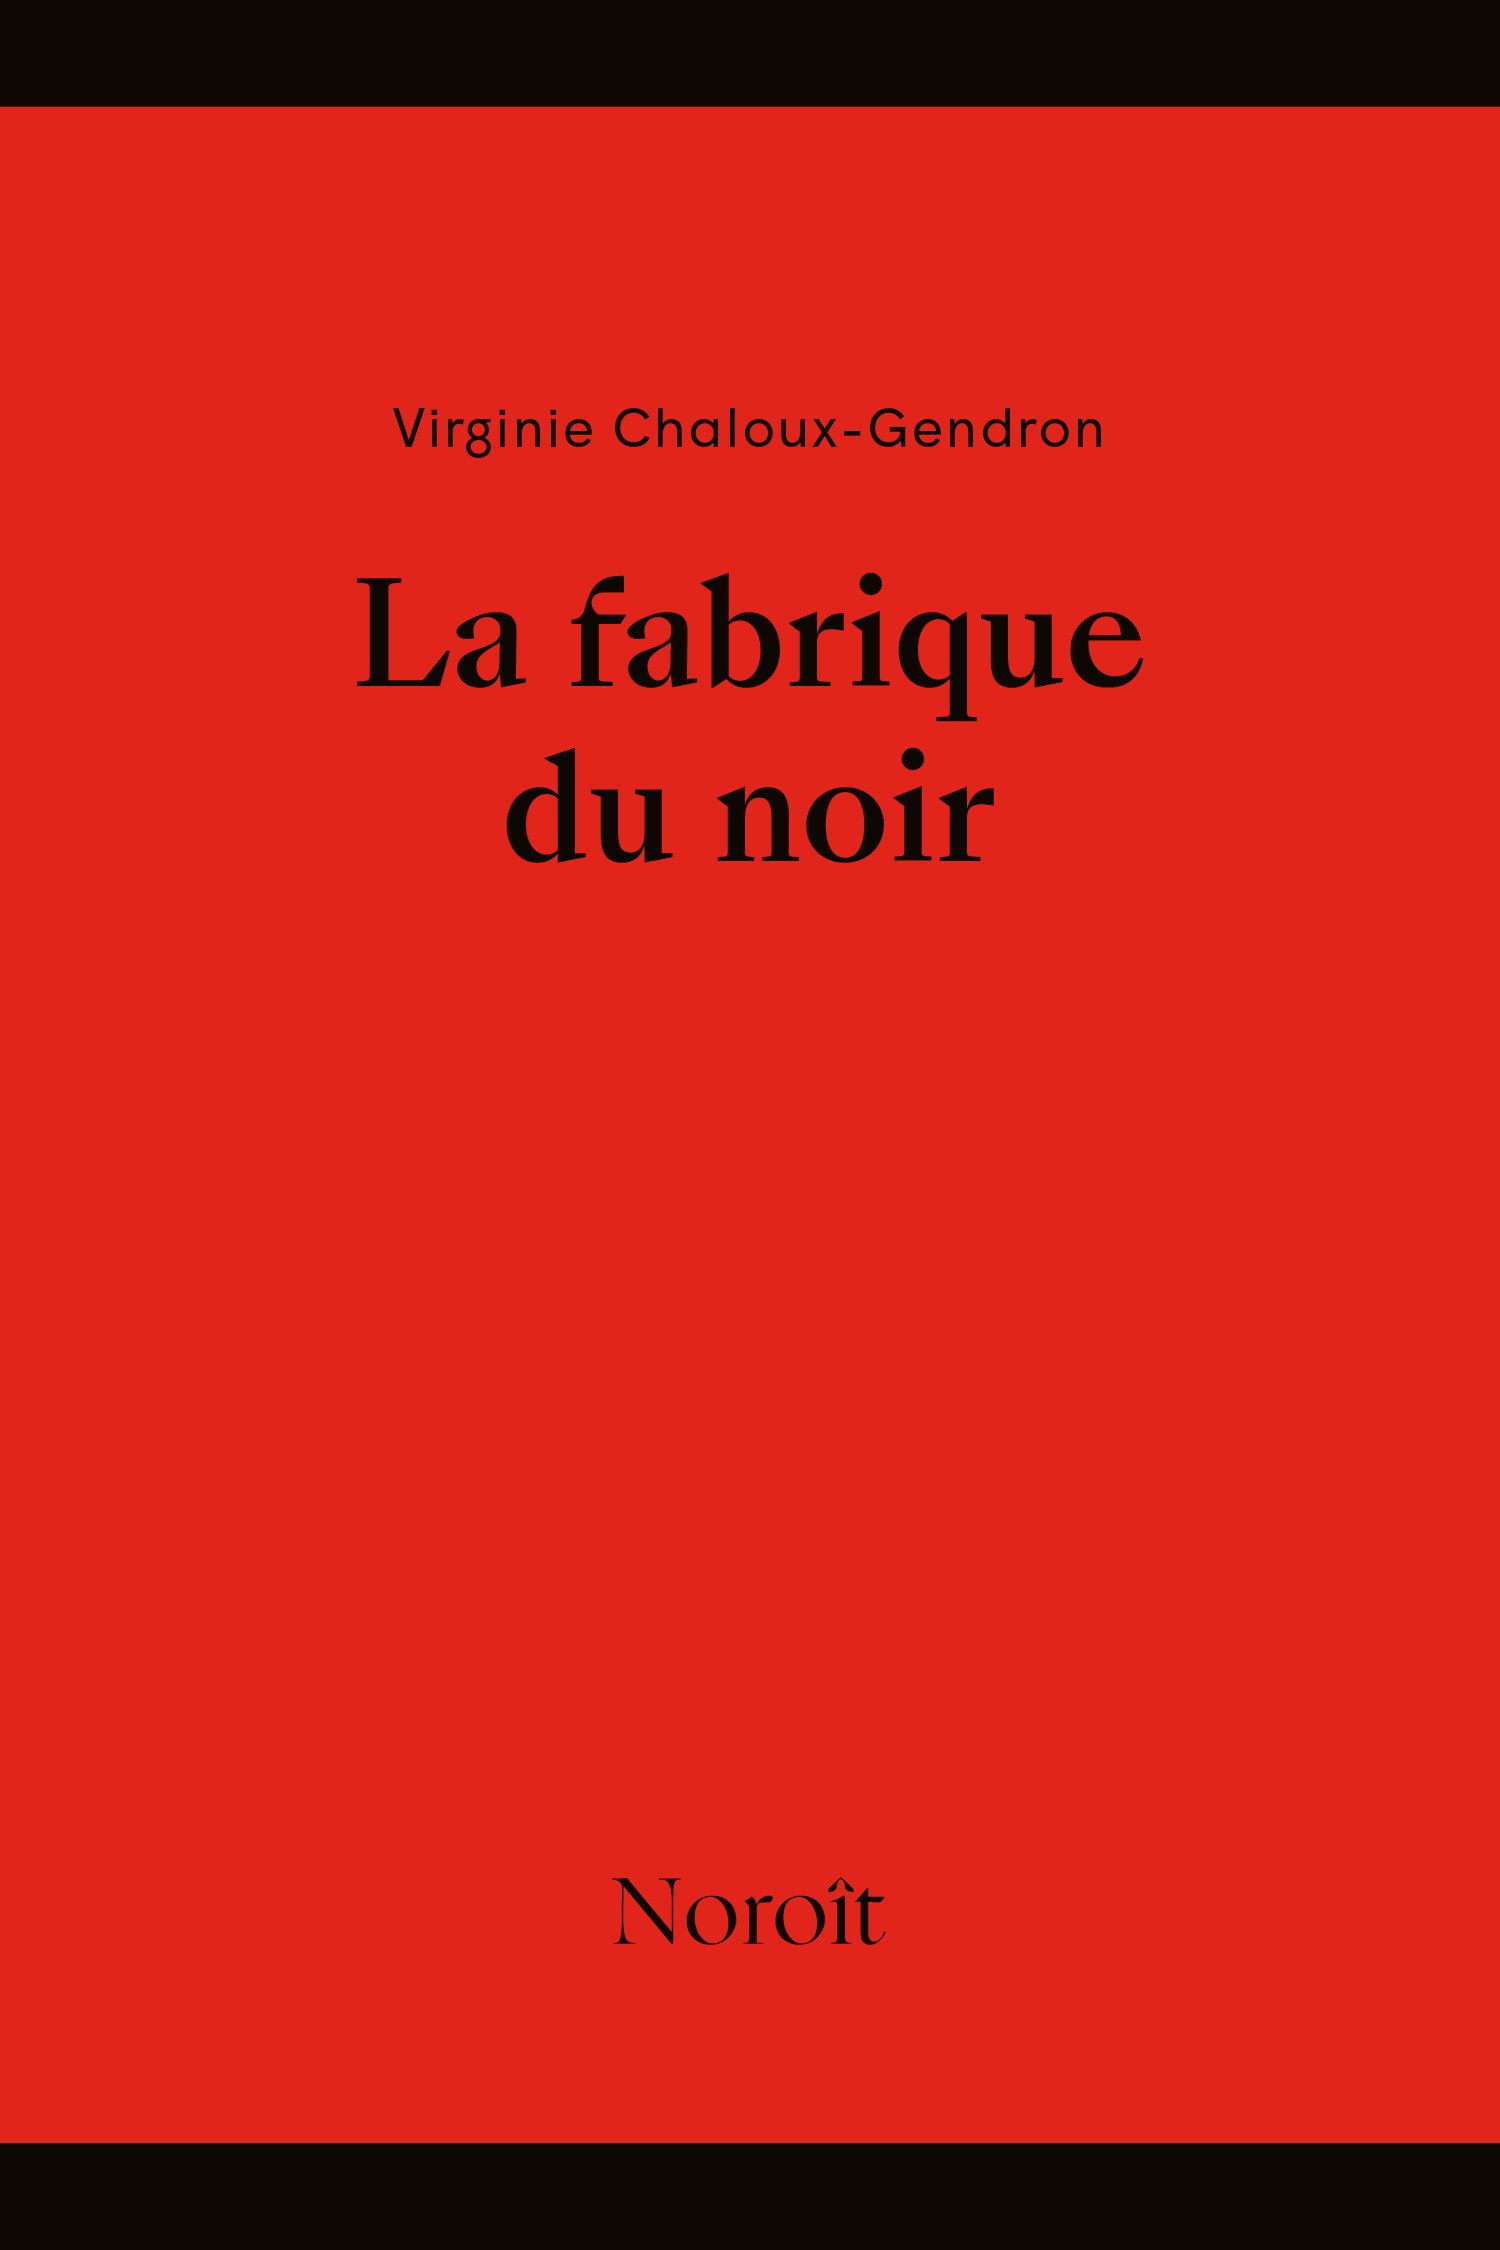 Fabrique-du-noir_Virgine Chaloux-Gendron_Noroit.jpeg